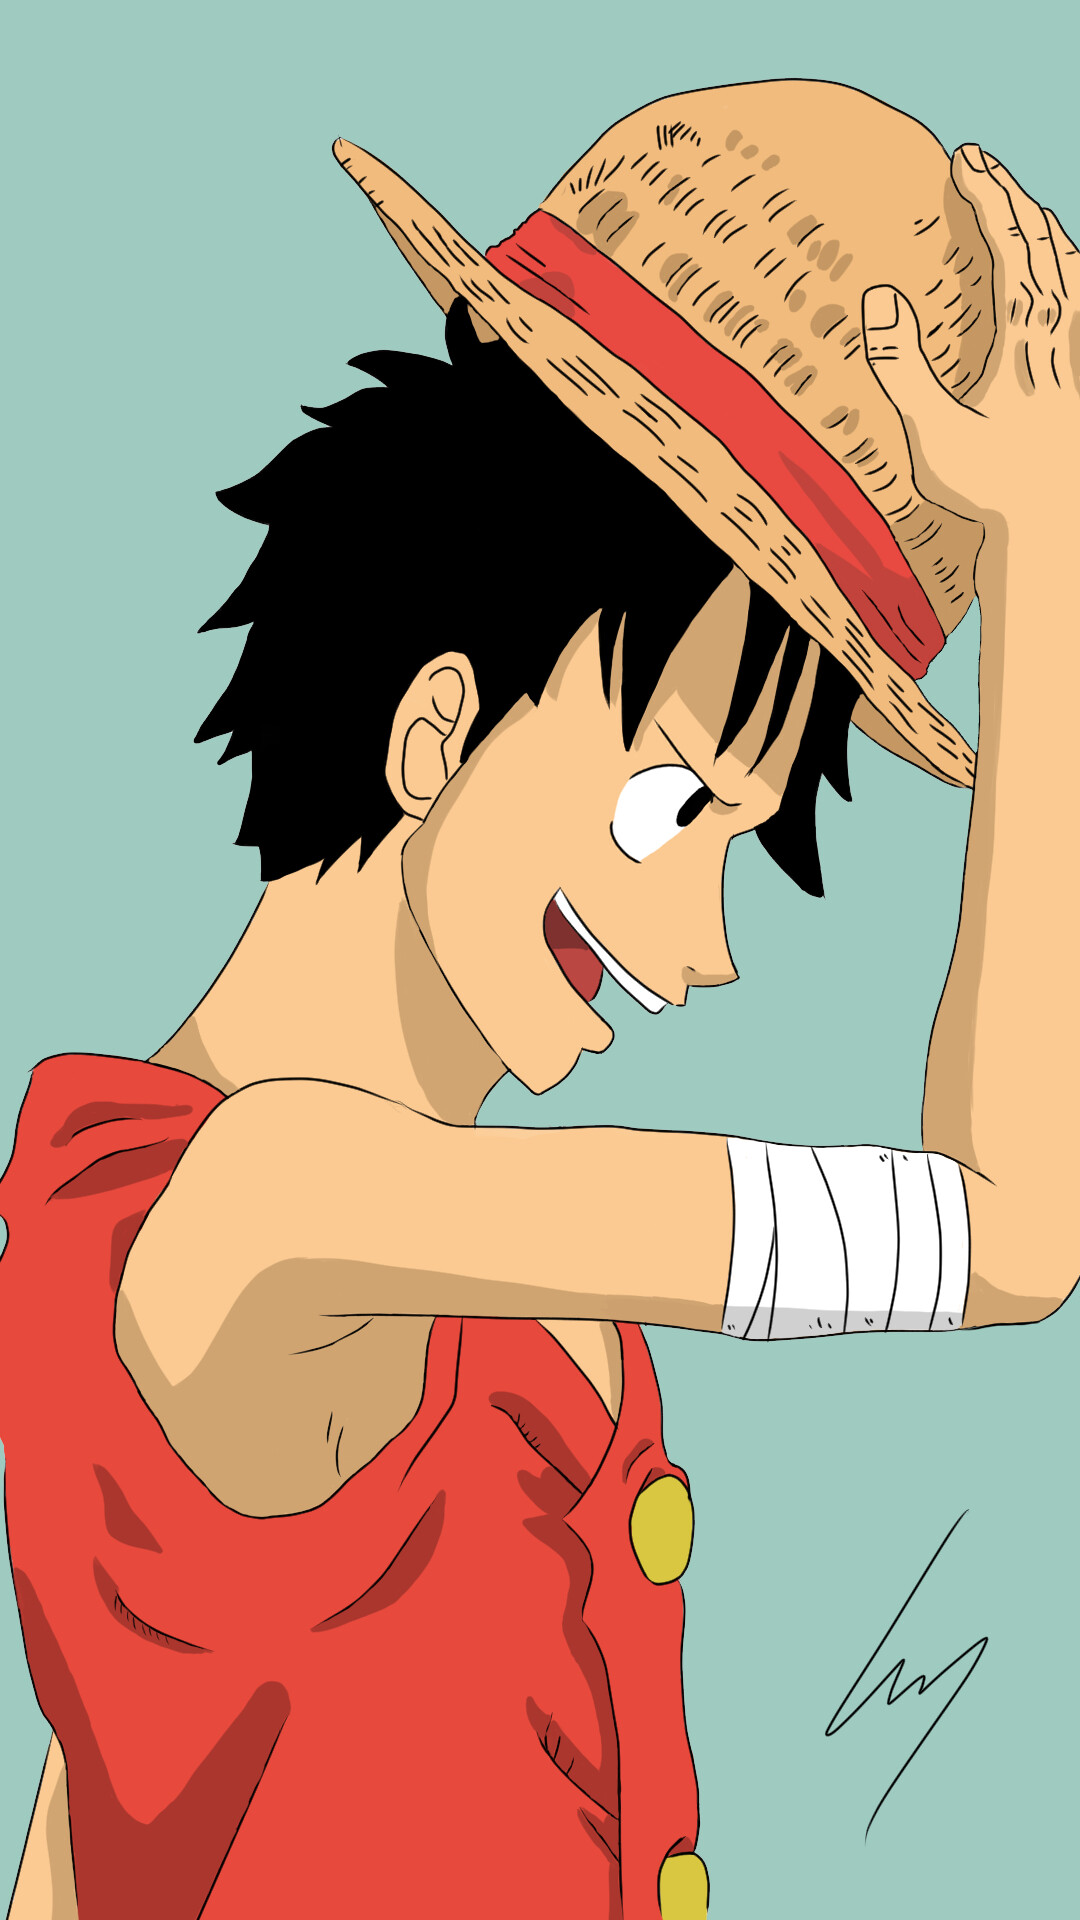 Luffy - một nhân vật không thể thiếu trong bộ truyện tranh One Piece. Hãy chiêm ngưỡng hình ảnh của anh chàng và hòa mình vào cuộc phiêu lưu đầy kịch tính của Luffy trên đại dương rộng lớn.